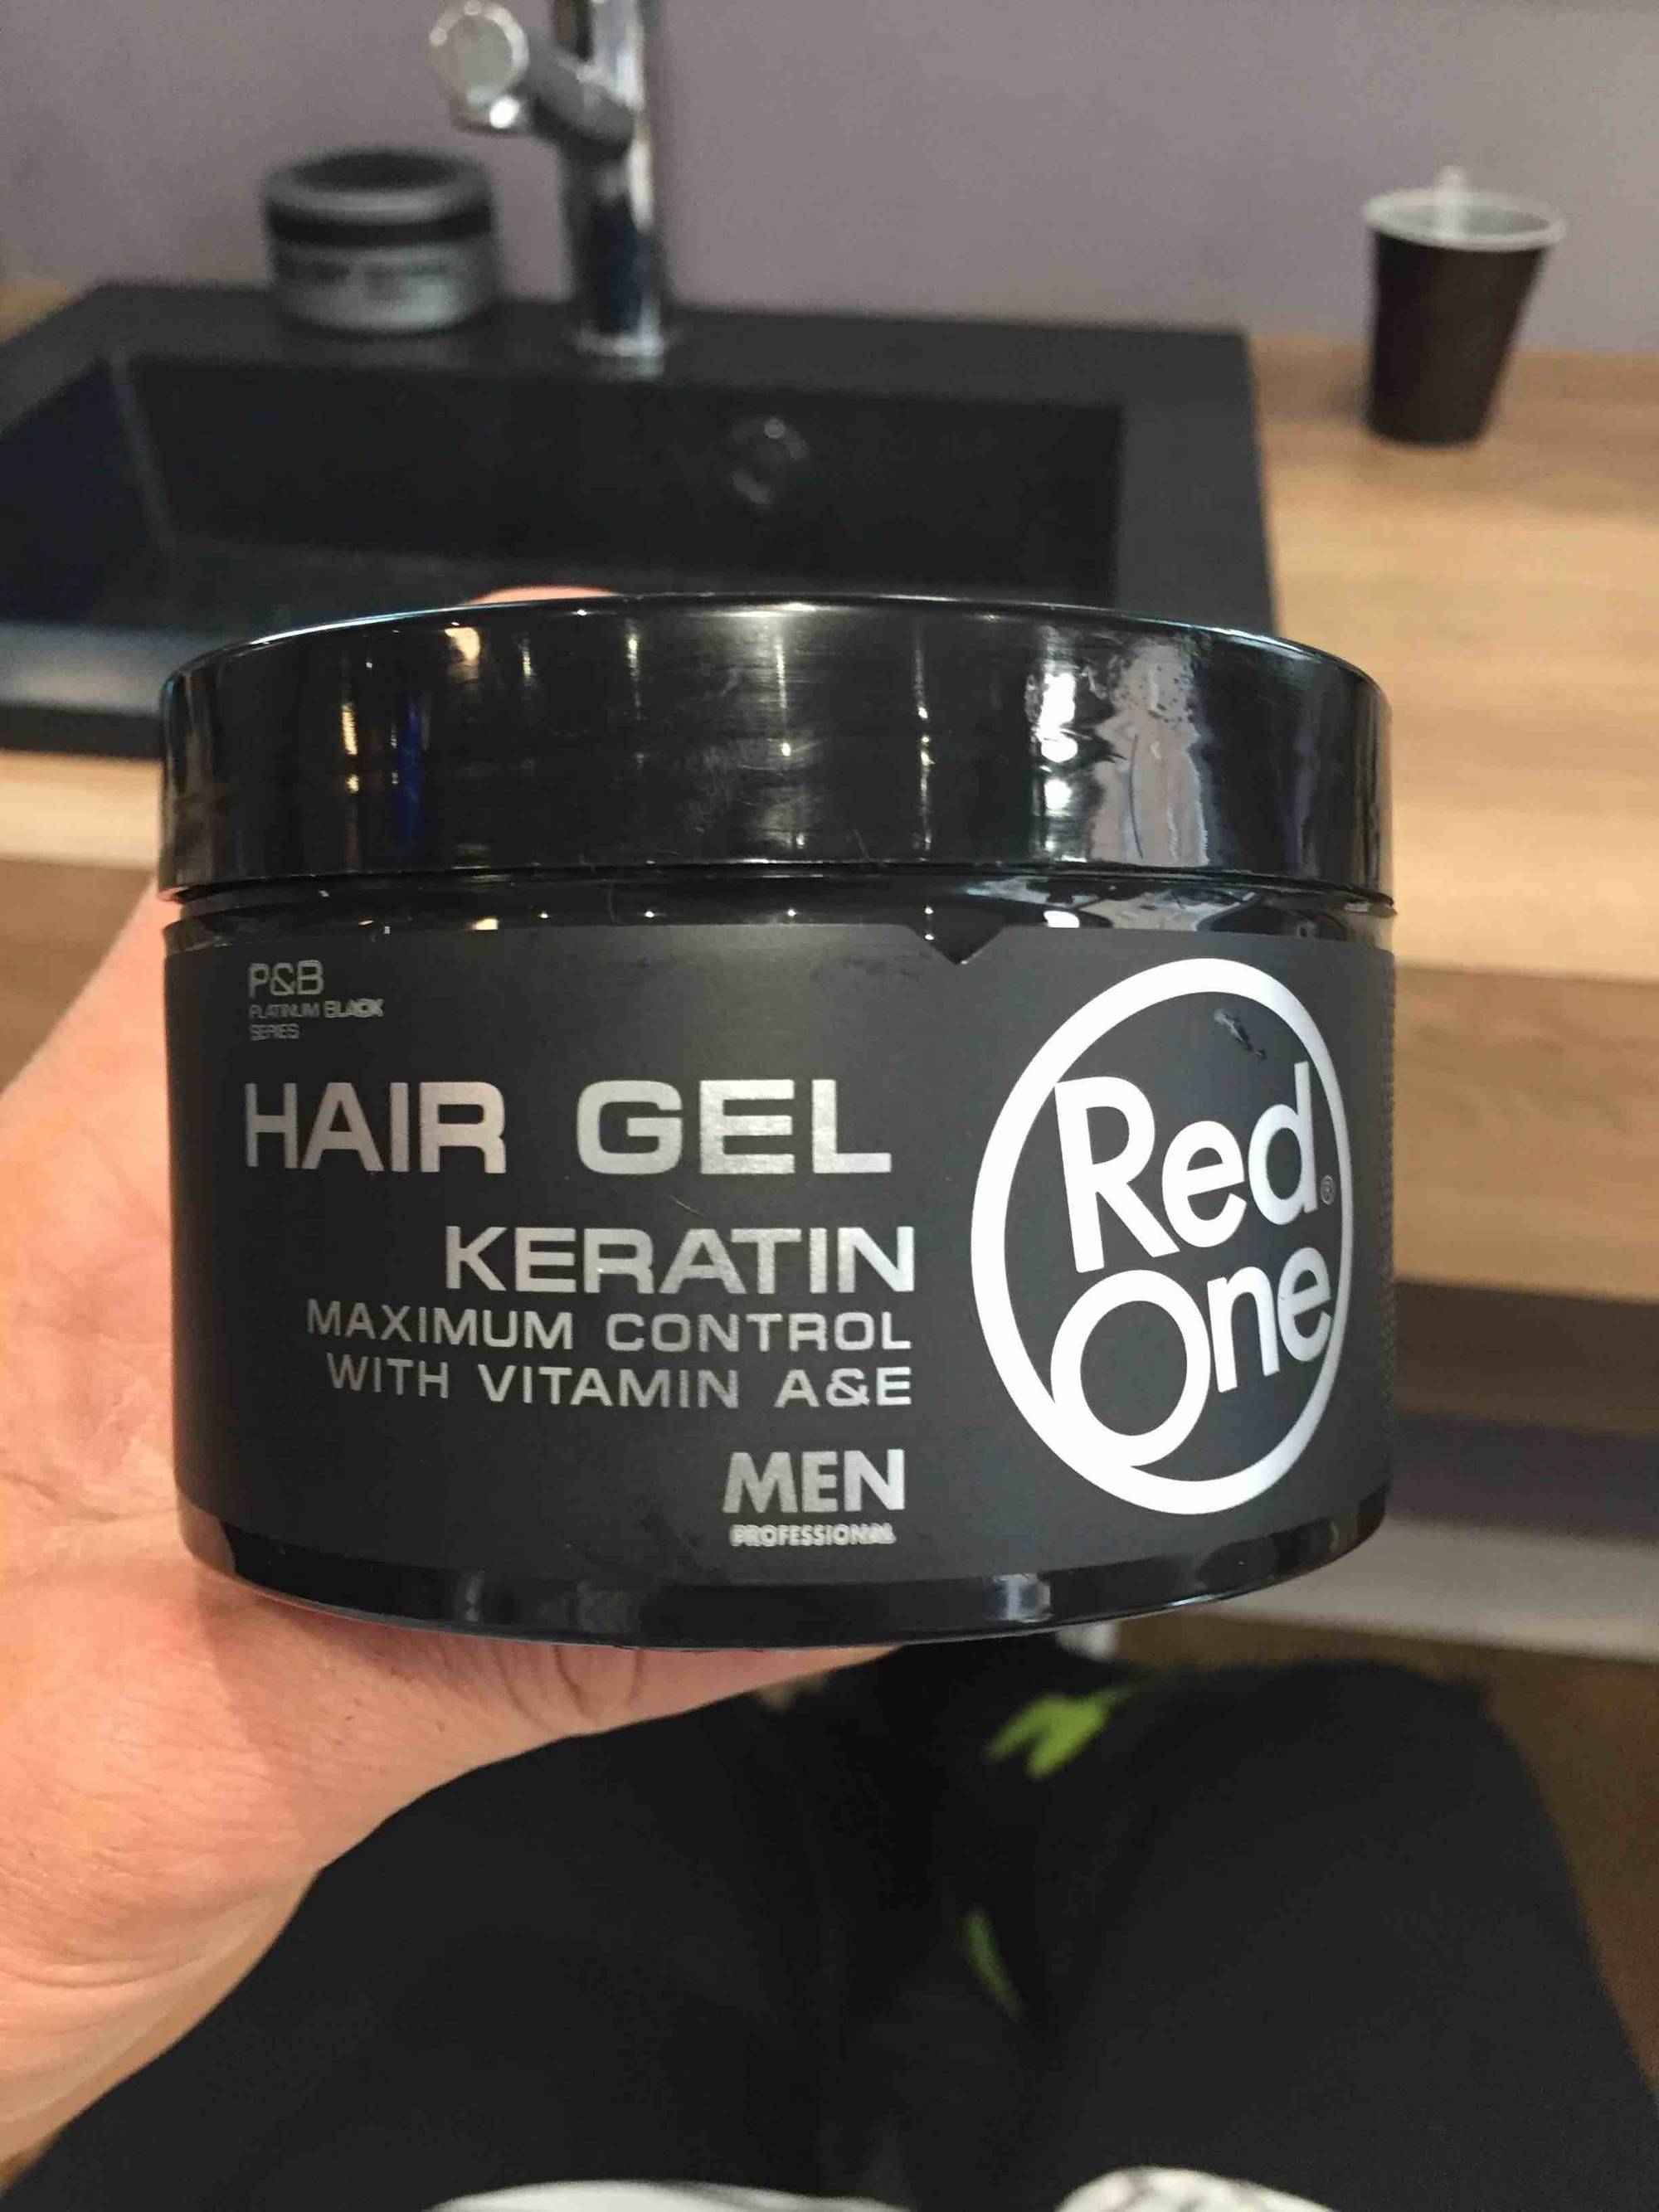 RED ONE - Hair gel keratin men